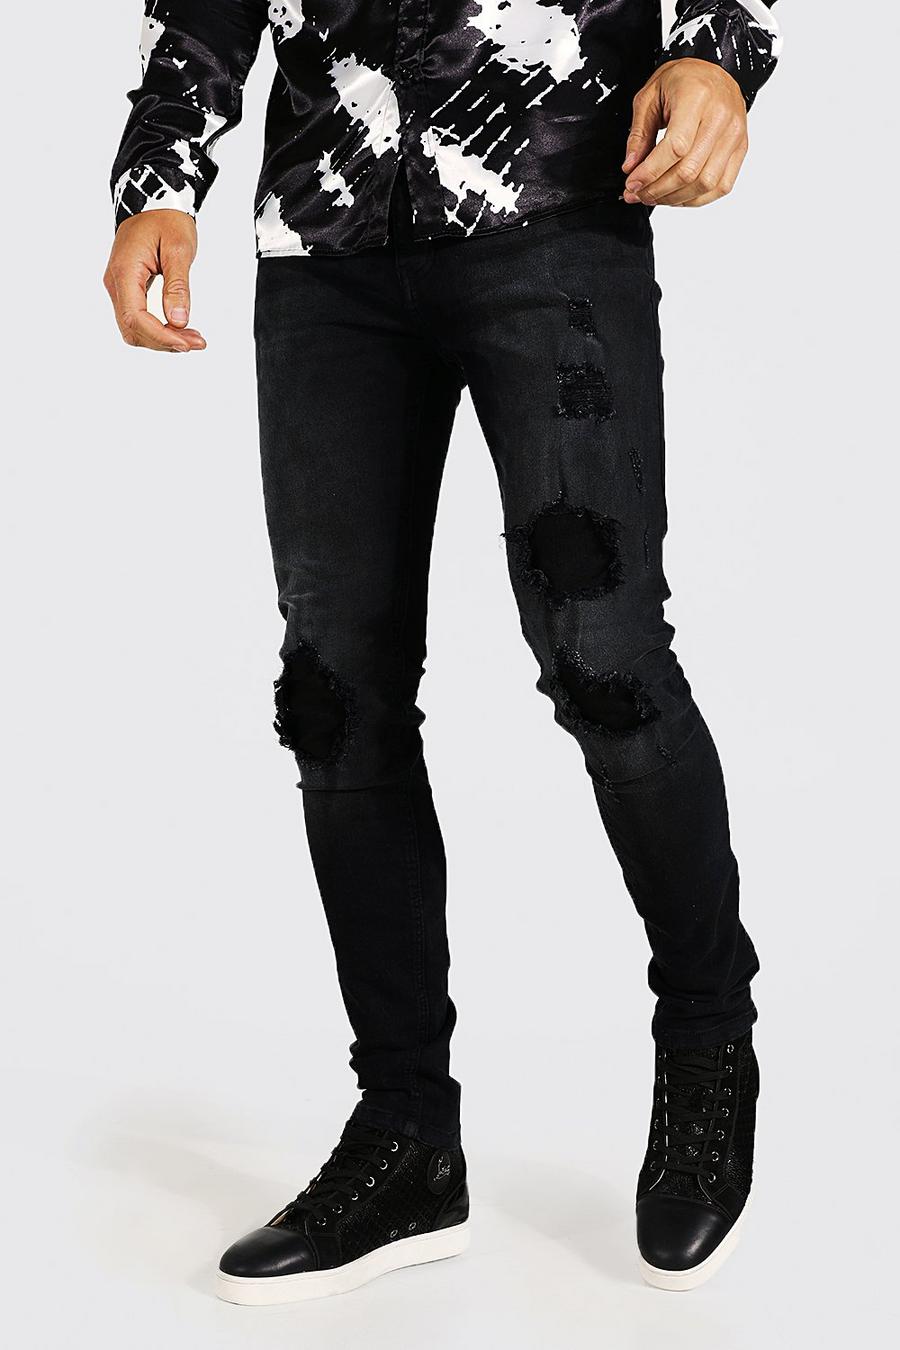 שחור nero סקיני ג'ינס עם קרעים וטלאים, מידות לגברים גבוהים